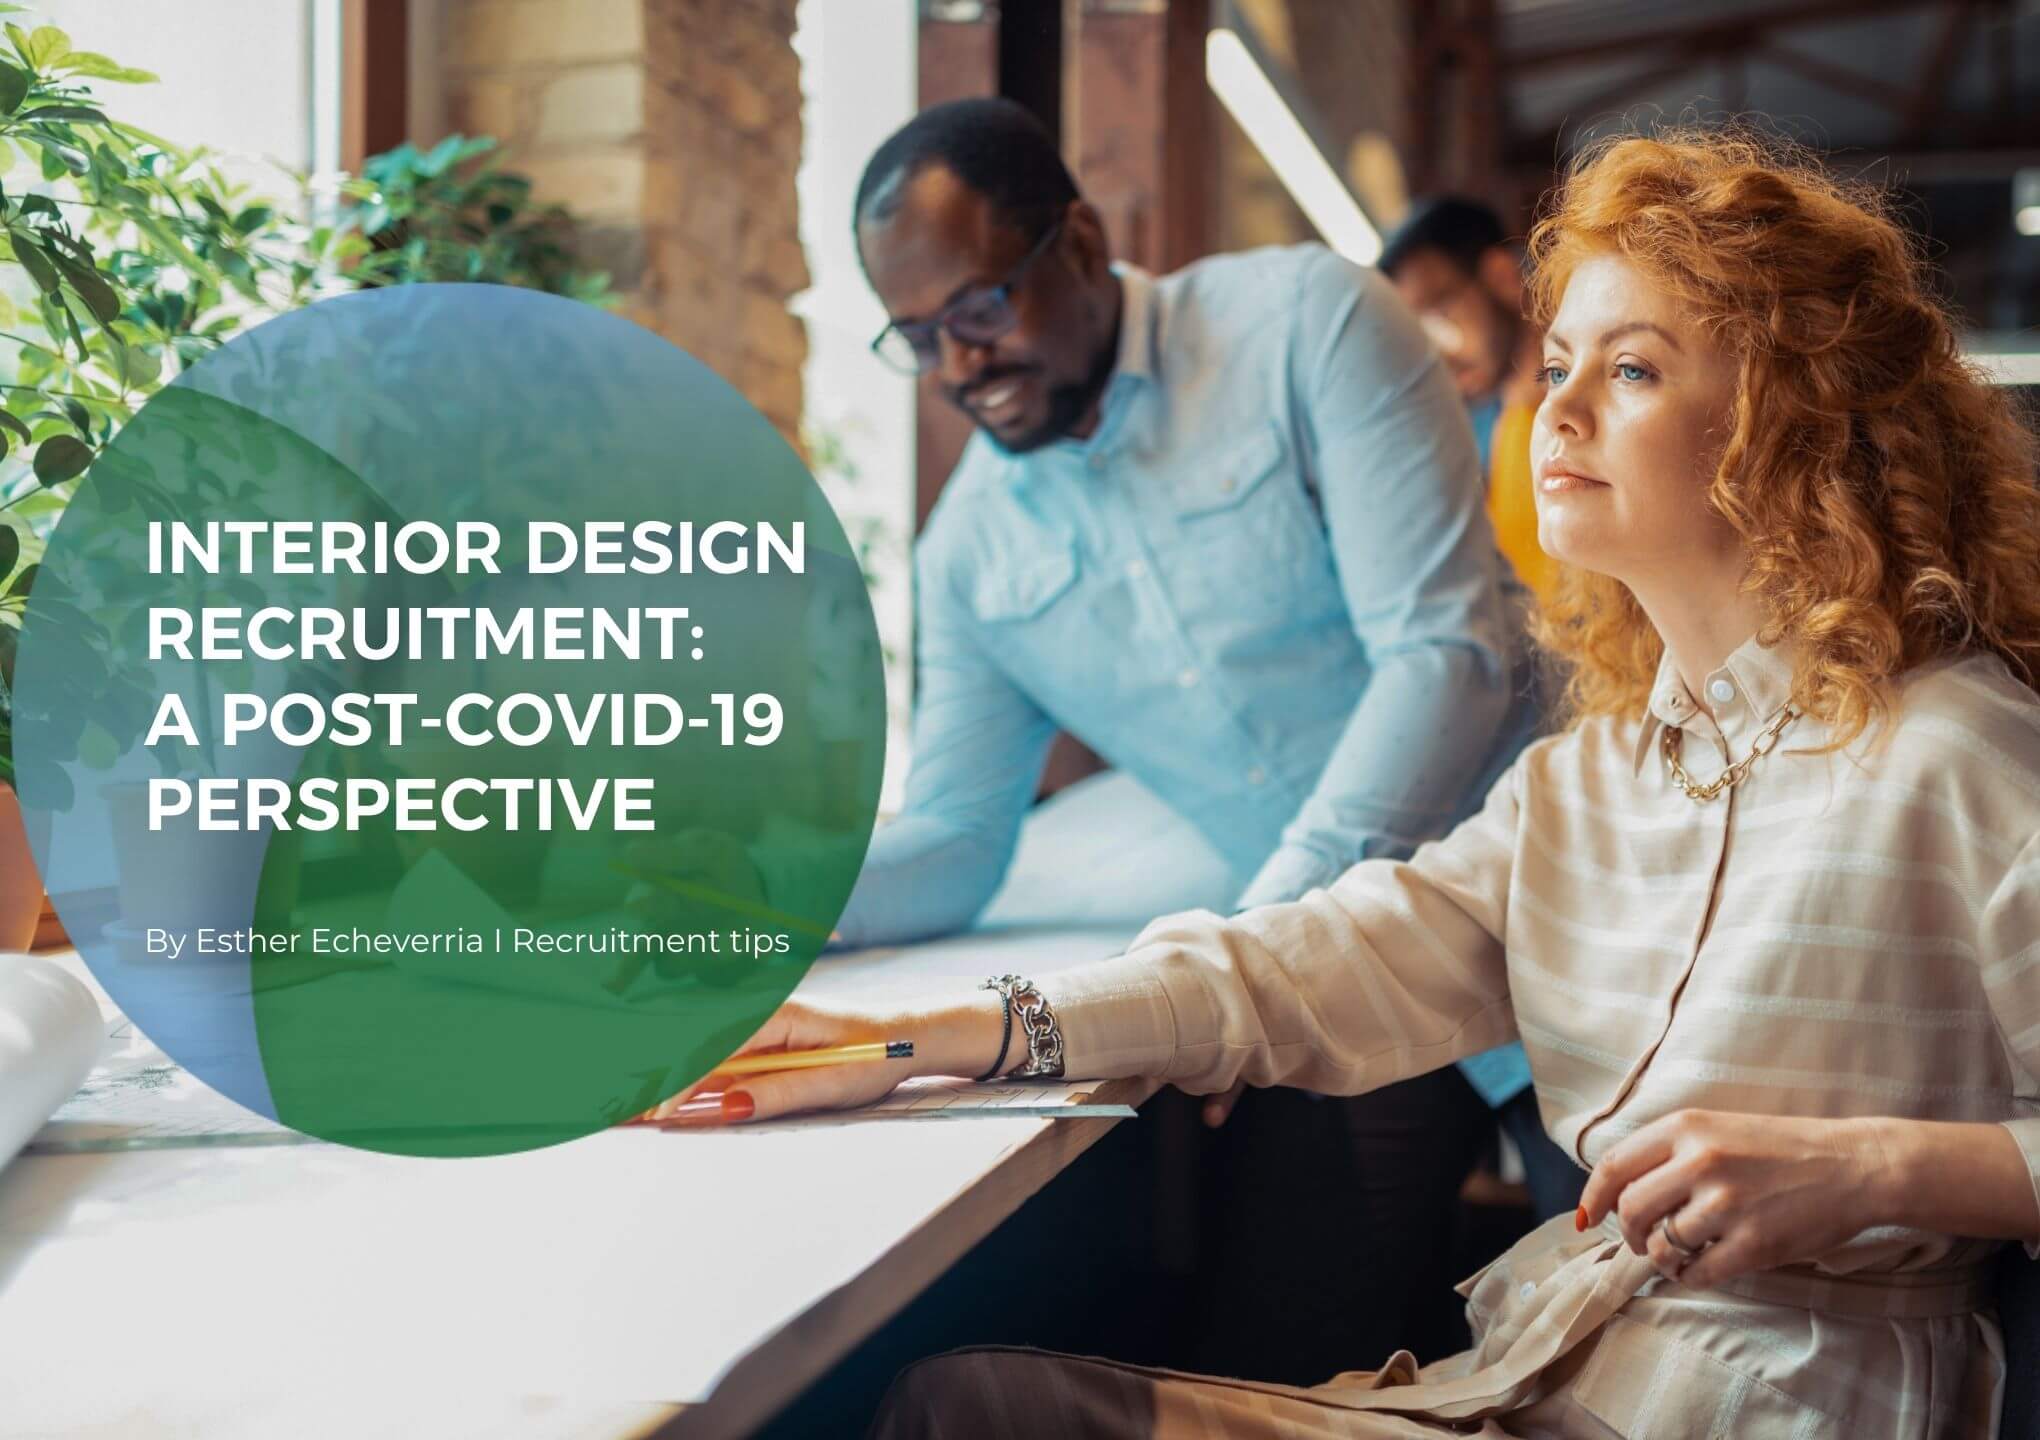 Interior design recruitment: A post-Covid-19 perspective